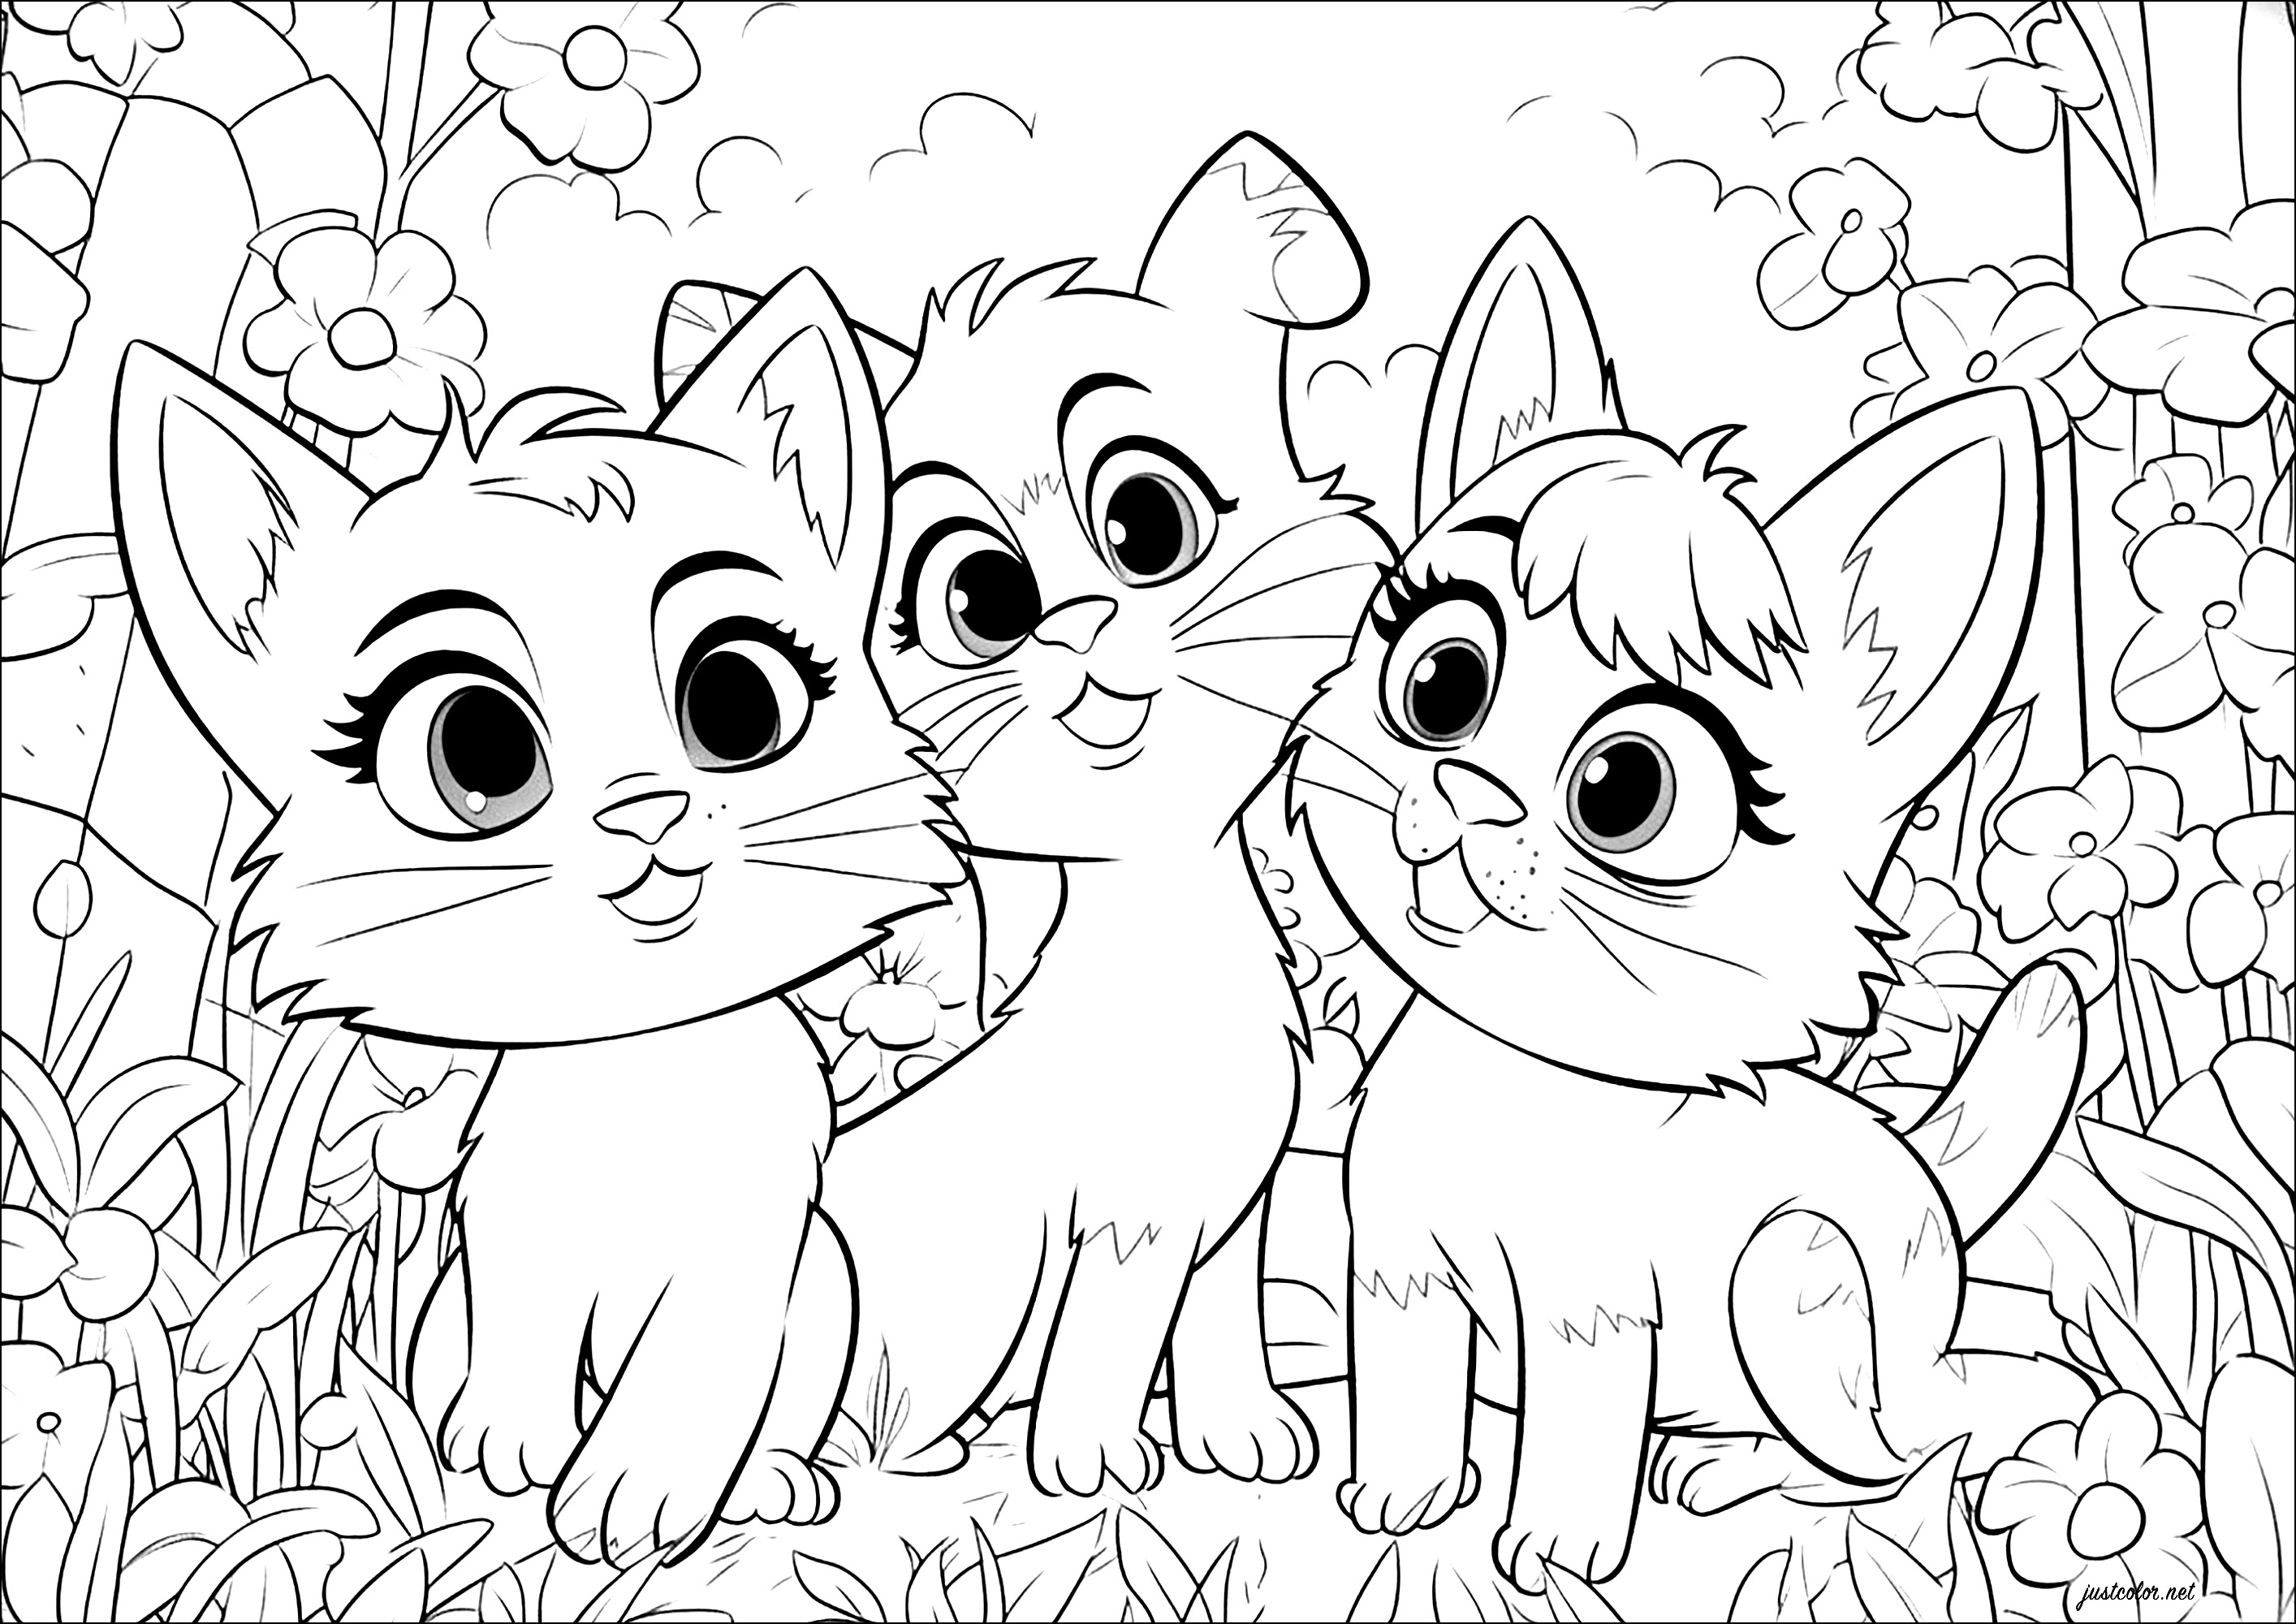 Três gatos, estilo Disney - Pixar. Estes três gatos são desenhados num estilo que faz lembrar os filmes de animação da Disney - Pixar.